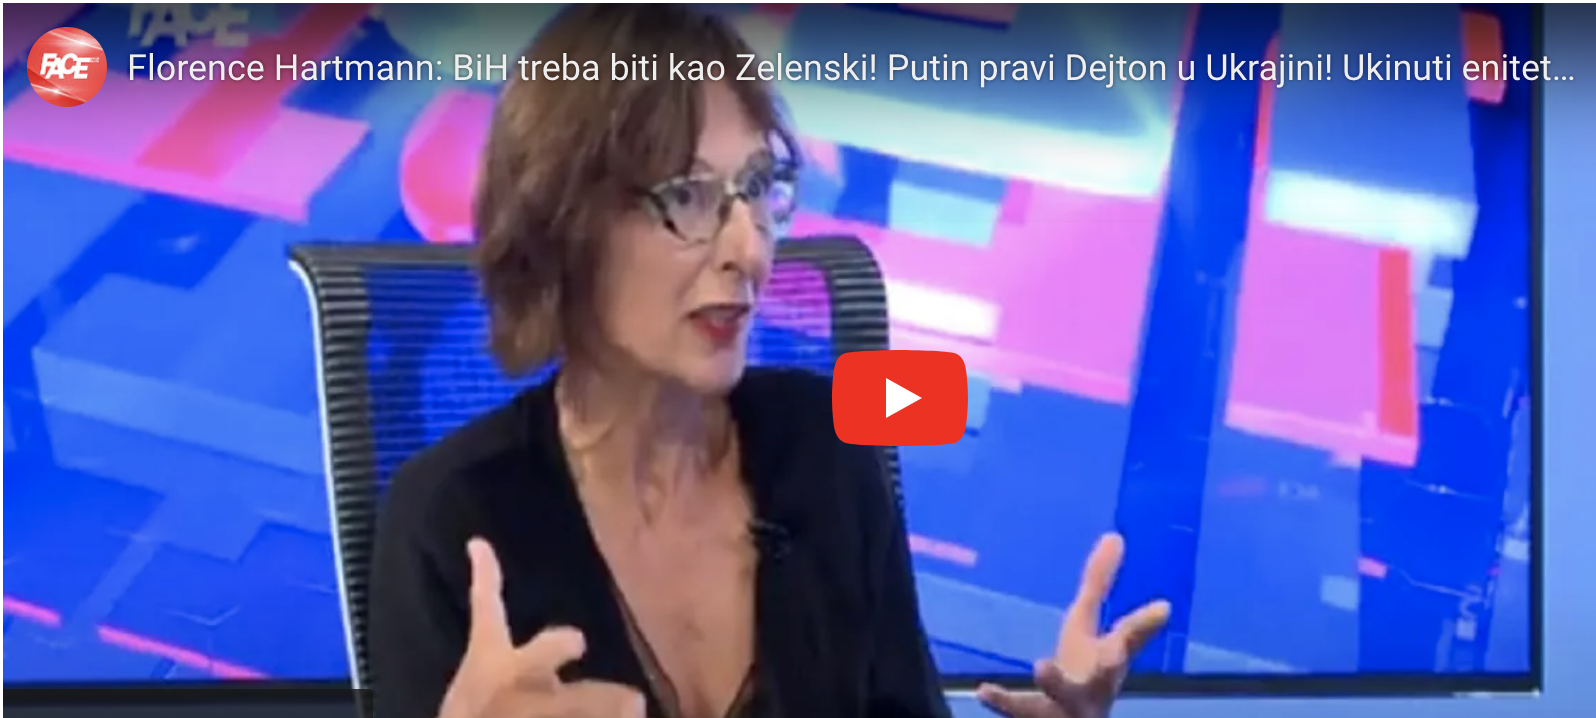 Florence Hartmann: BiH treba biti kao Zelenski! Putin pravi Dejton u Ukrajini! Ukinuti enitete u BiH